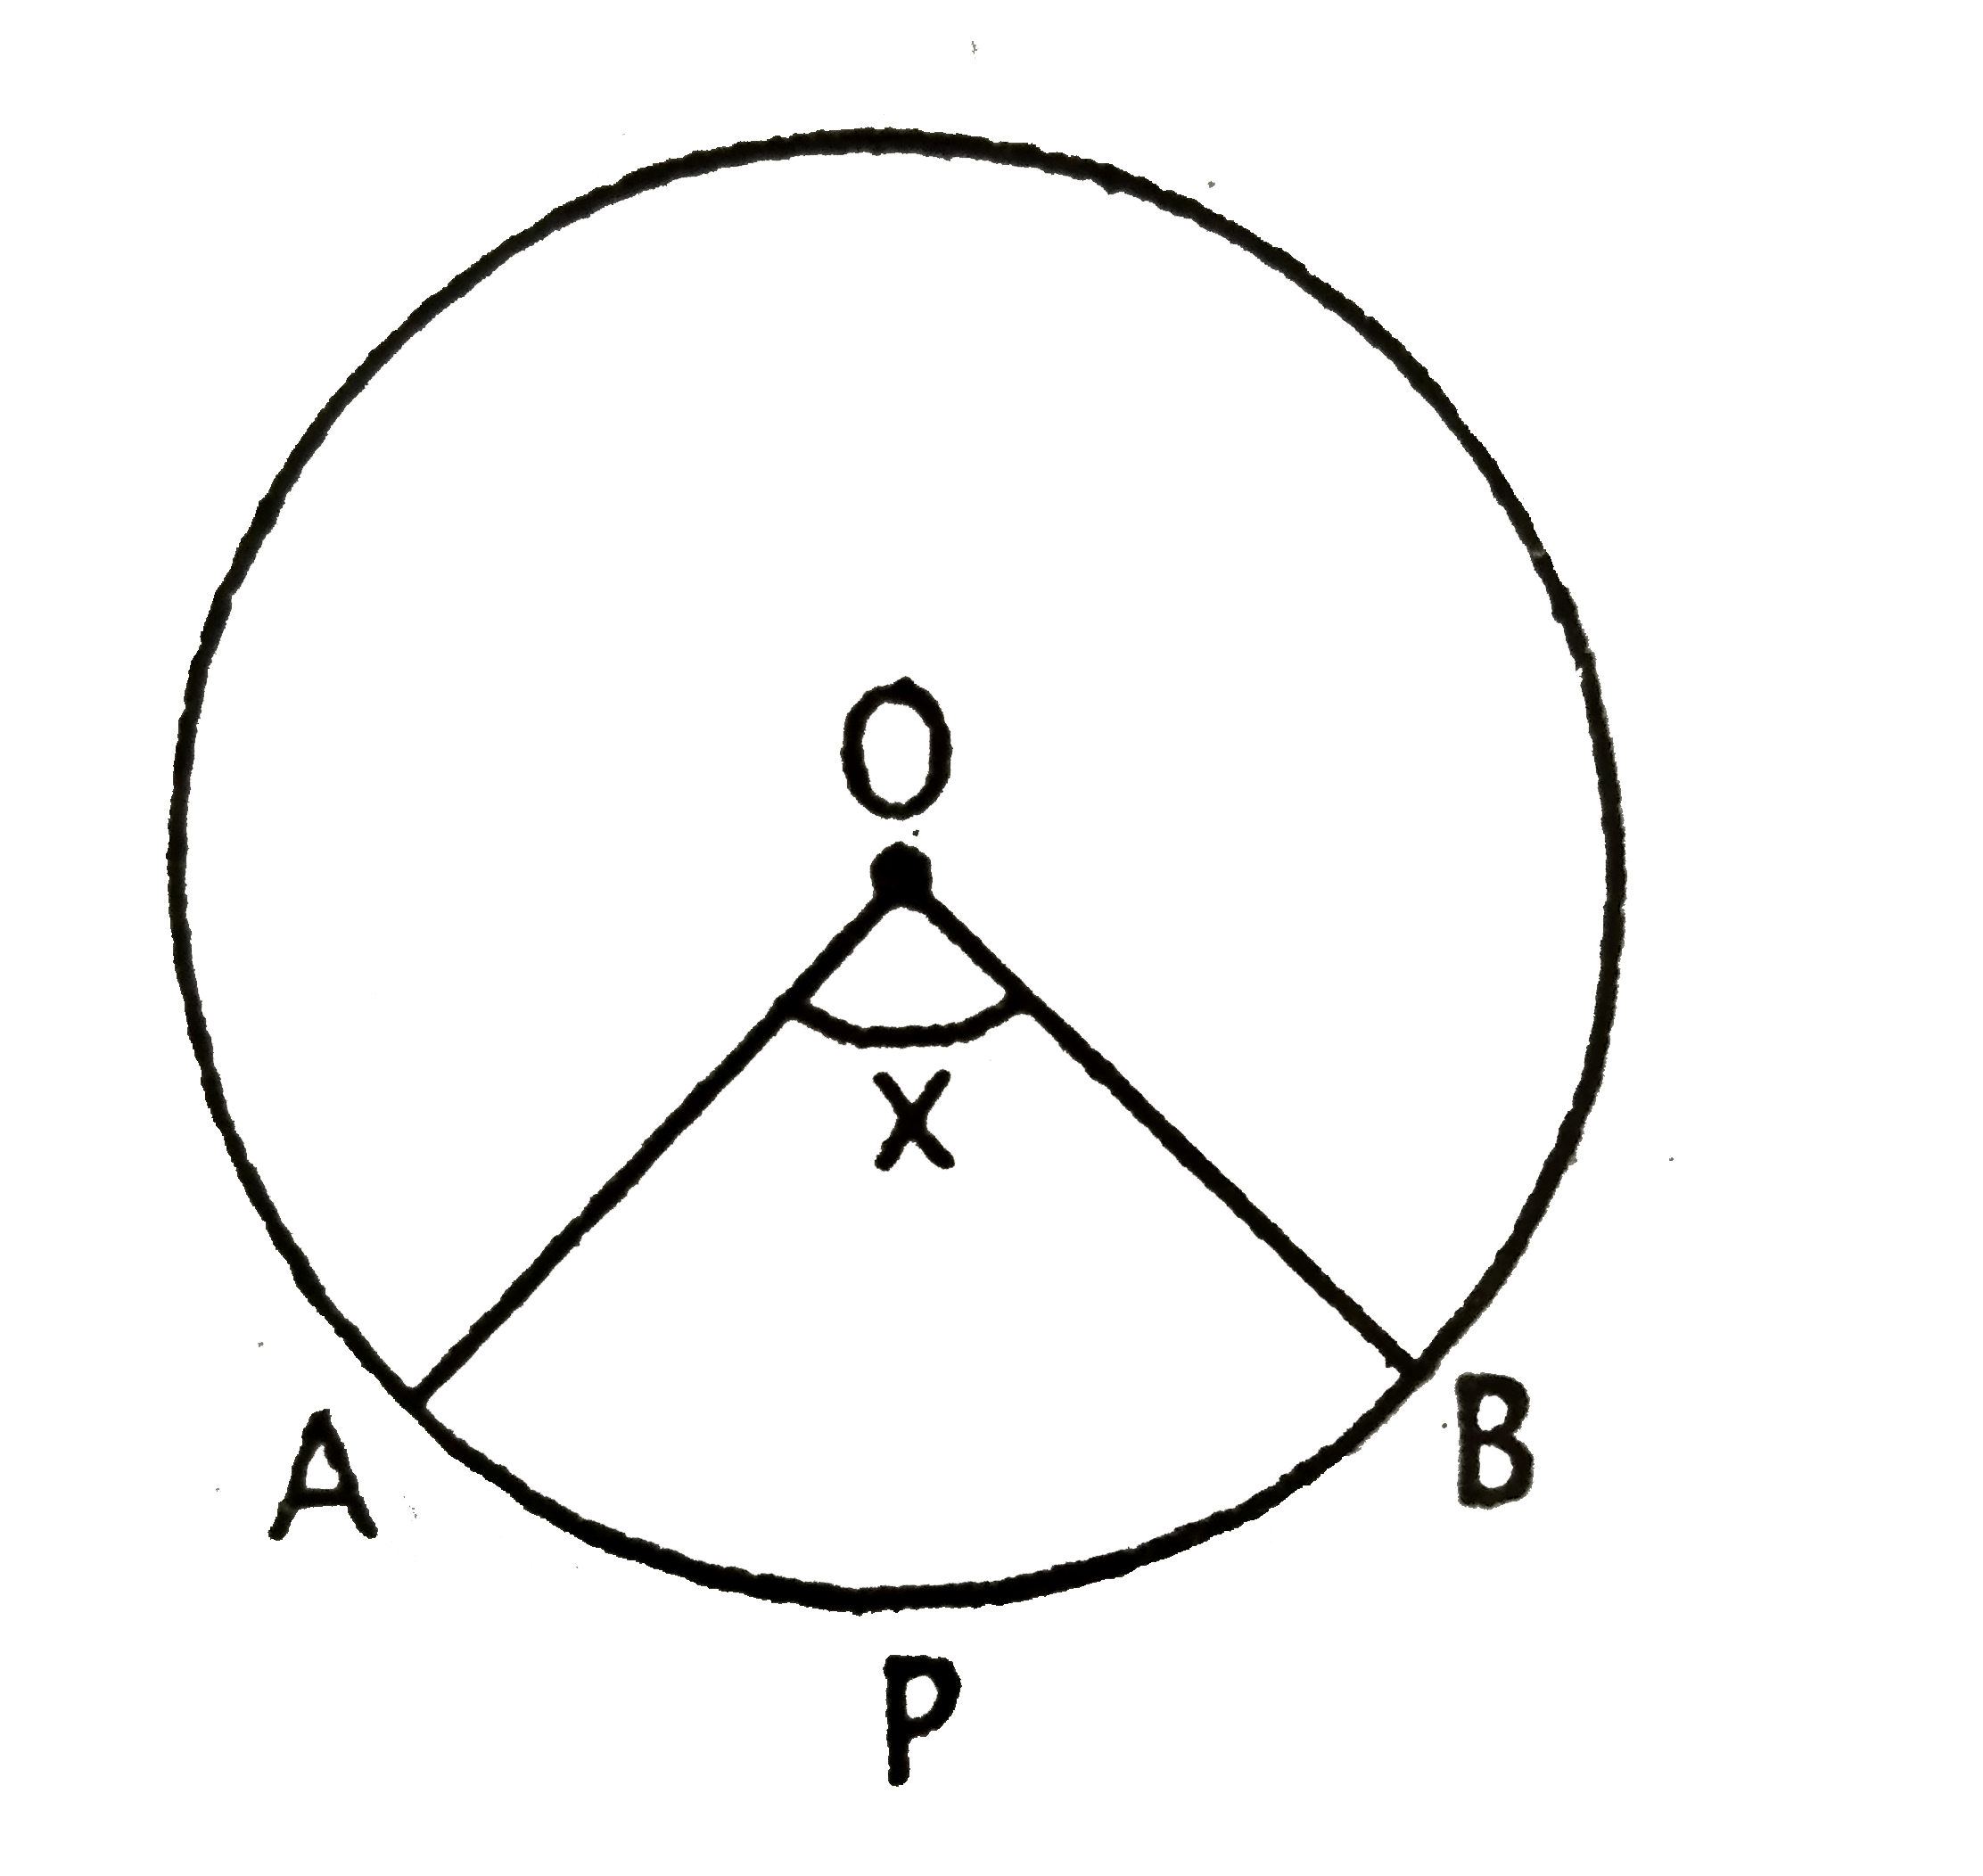 दिए  गए  चित्र में  O वृत्त  का  केंद्र  है  | त्रिज्यखण्ड  OAPB  का क्षेत्रफल  वृत्त  के  क्षेत्रफल  का    (  5 ) /( 18)   वां  भाग  है तो  x  का मान  क्या होगा ?